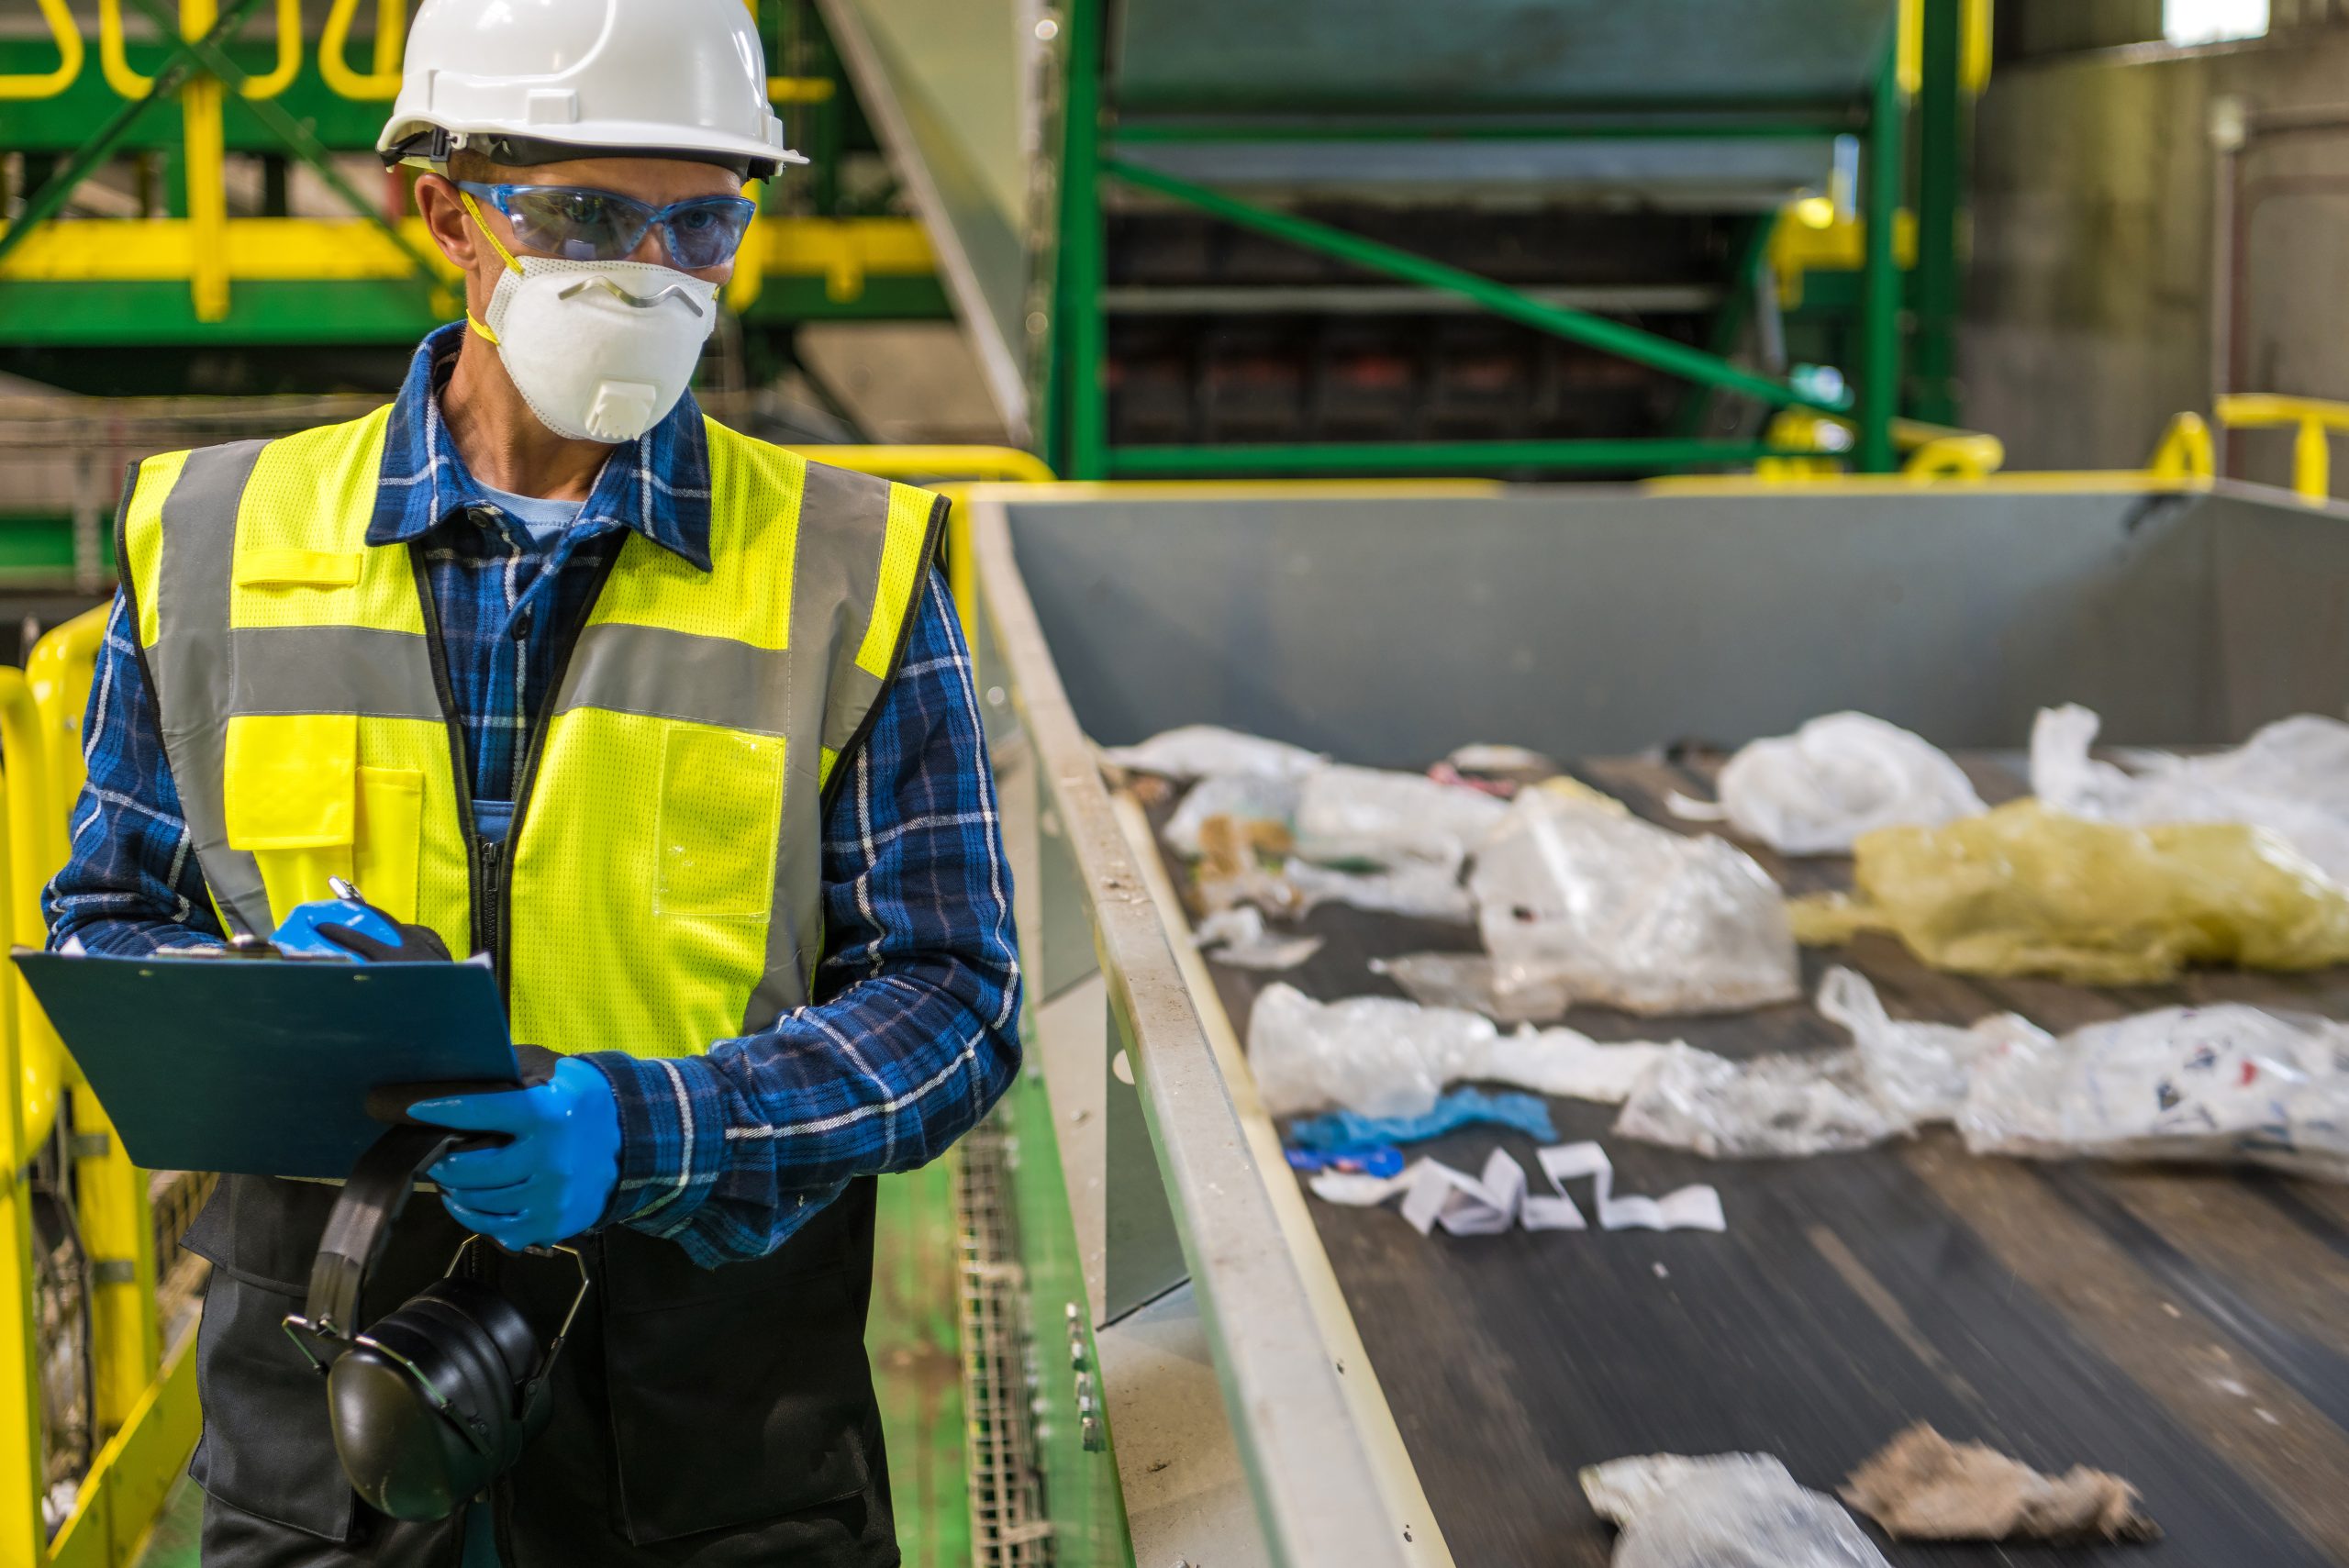 Un uomo controlla il processo di economia circolare dei rifiuti segnando le cose che non vanno bene e potrebbero mettere a rischio la salute e la sicurezza sul lavoro